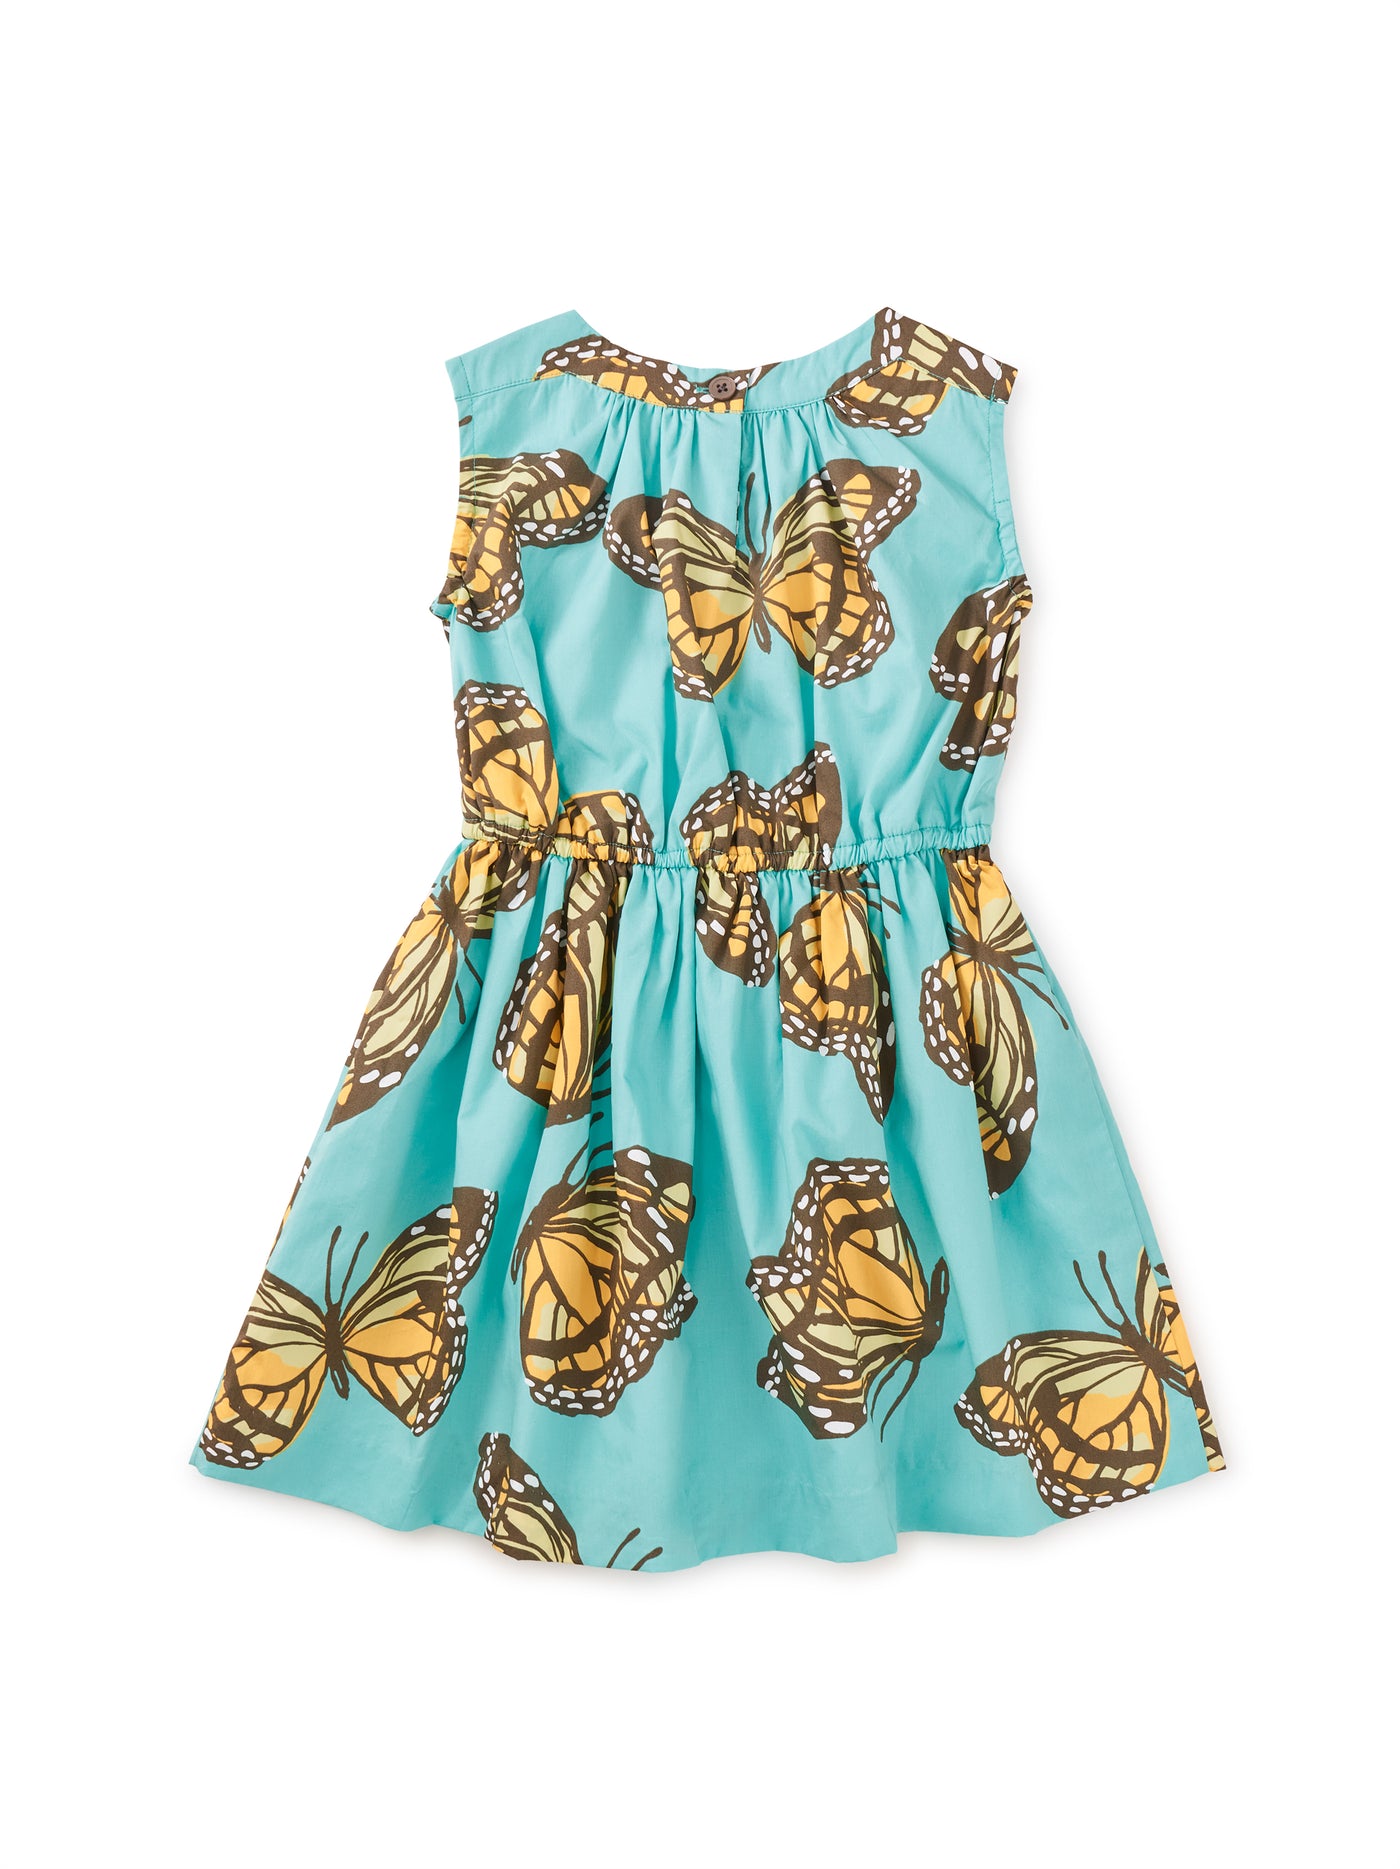 Monarch Migration Dress